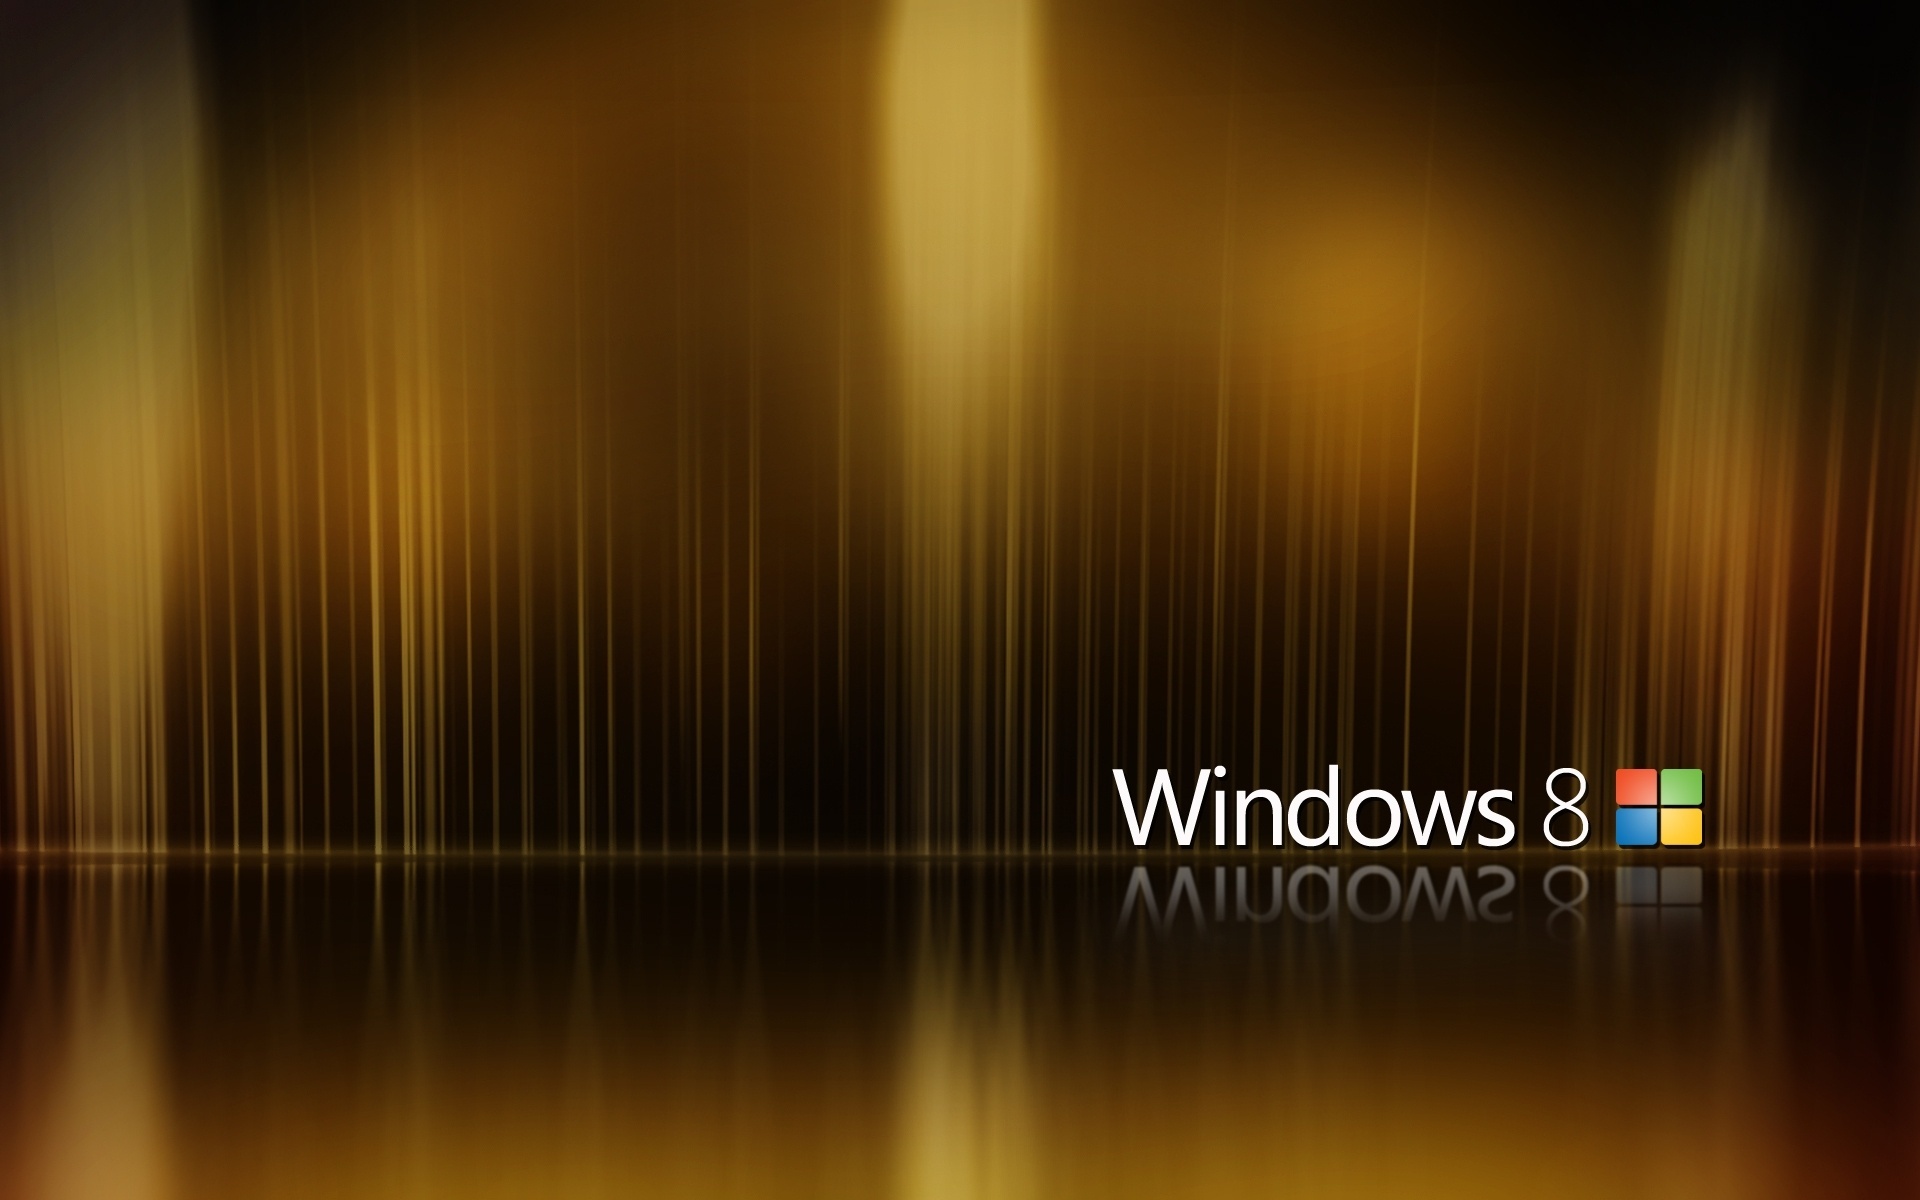 Windows 8 brown abstract background wallpaper là sự lựa chọn hoàn hảo để thể hiện phong cách cá nhân của bạn. Với thiết kế trừu tượng và màu sắc ấm áp, nó sẽ mang lại cảm giác thư giãn và cảm hứng cho bạn khi ngồi trước máy tính. Hãy xem hình ảnh liên quan đến từ khóa \